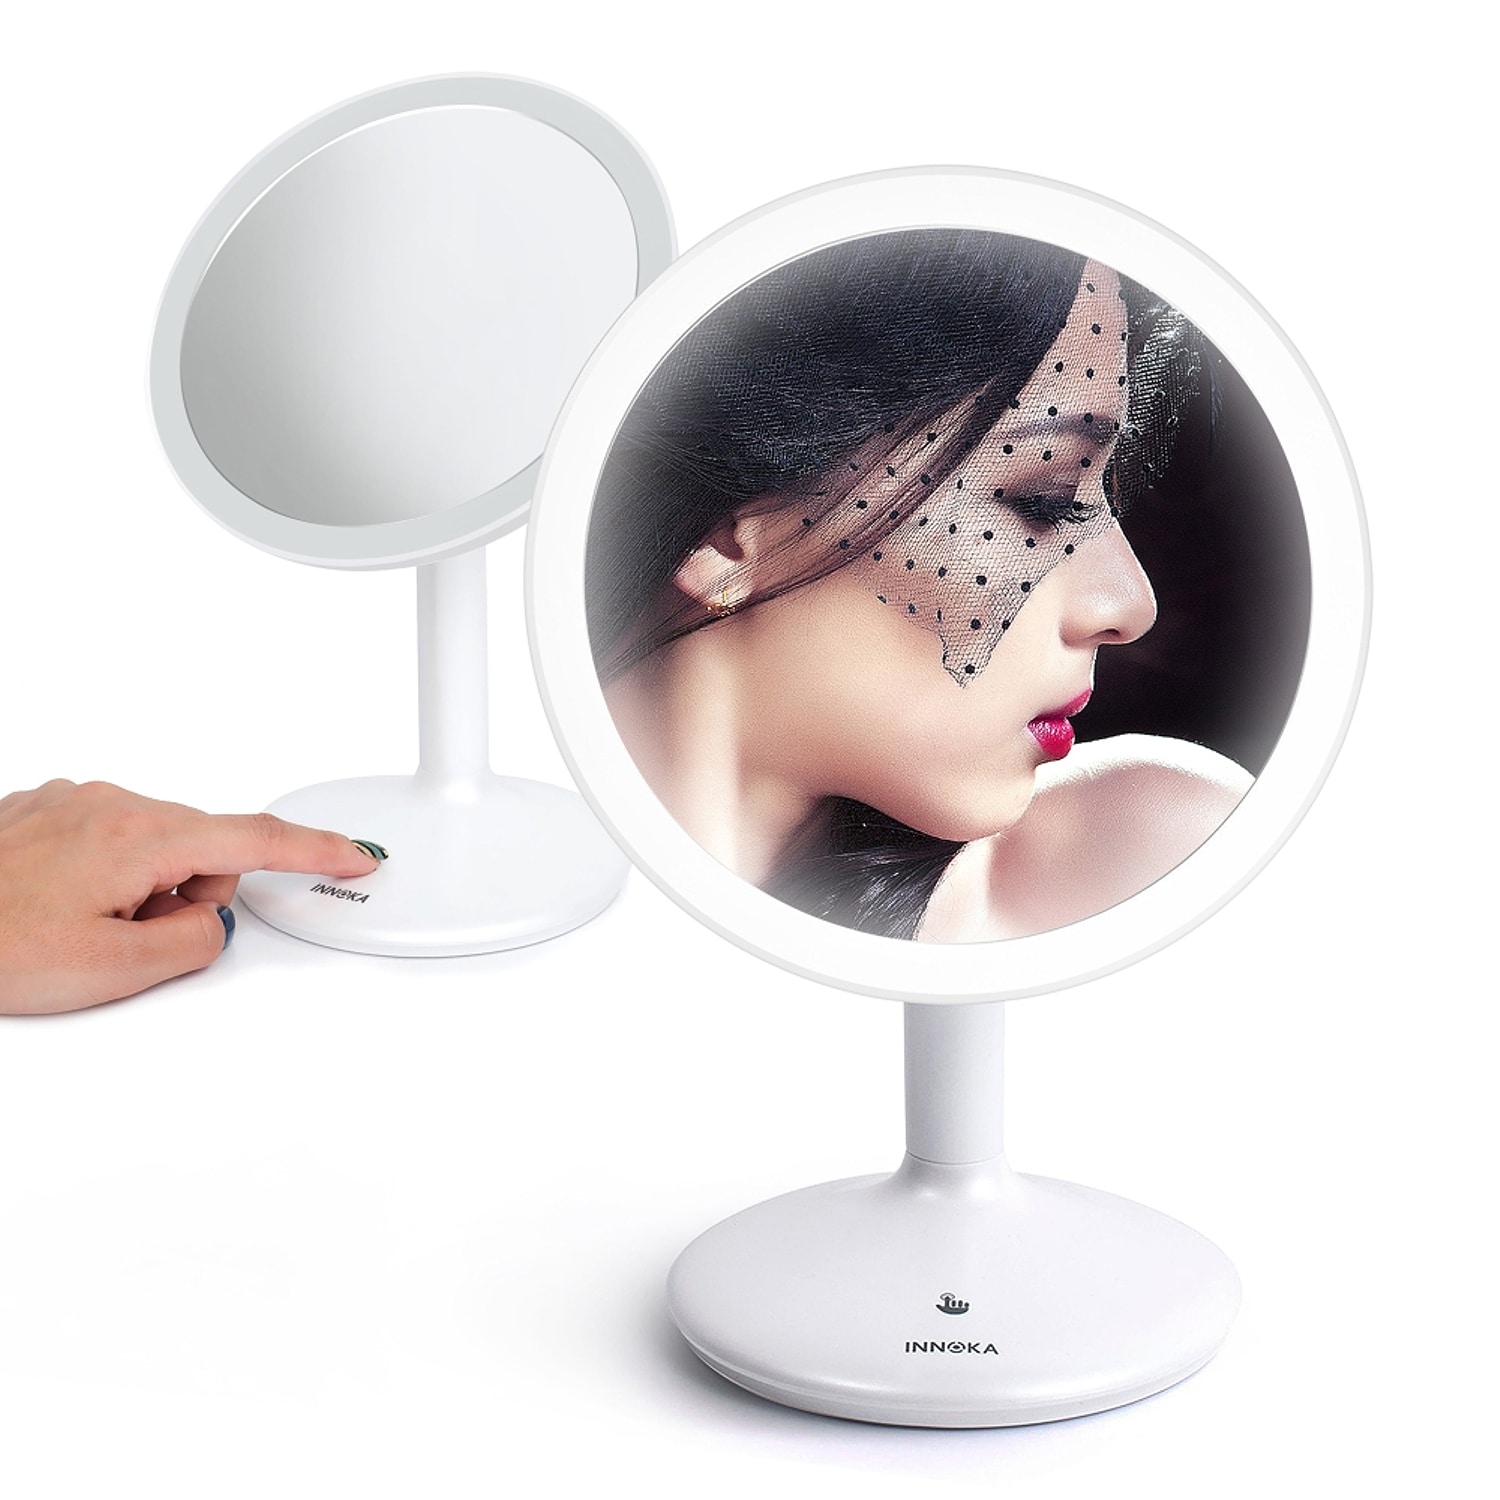 illuminated makeup mirror